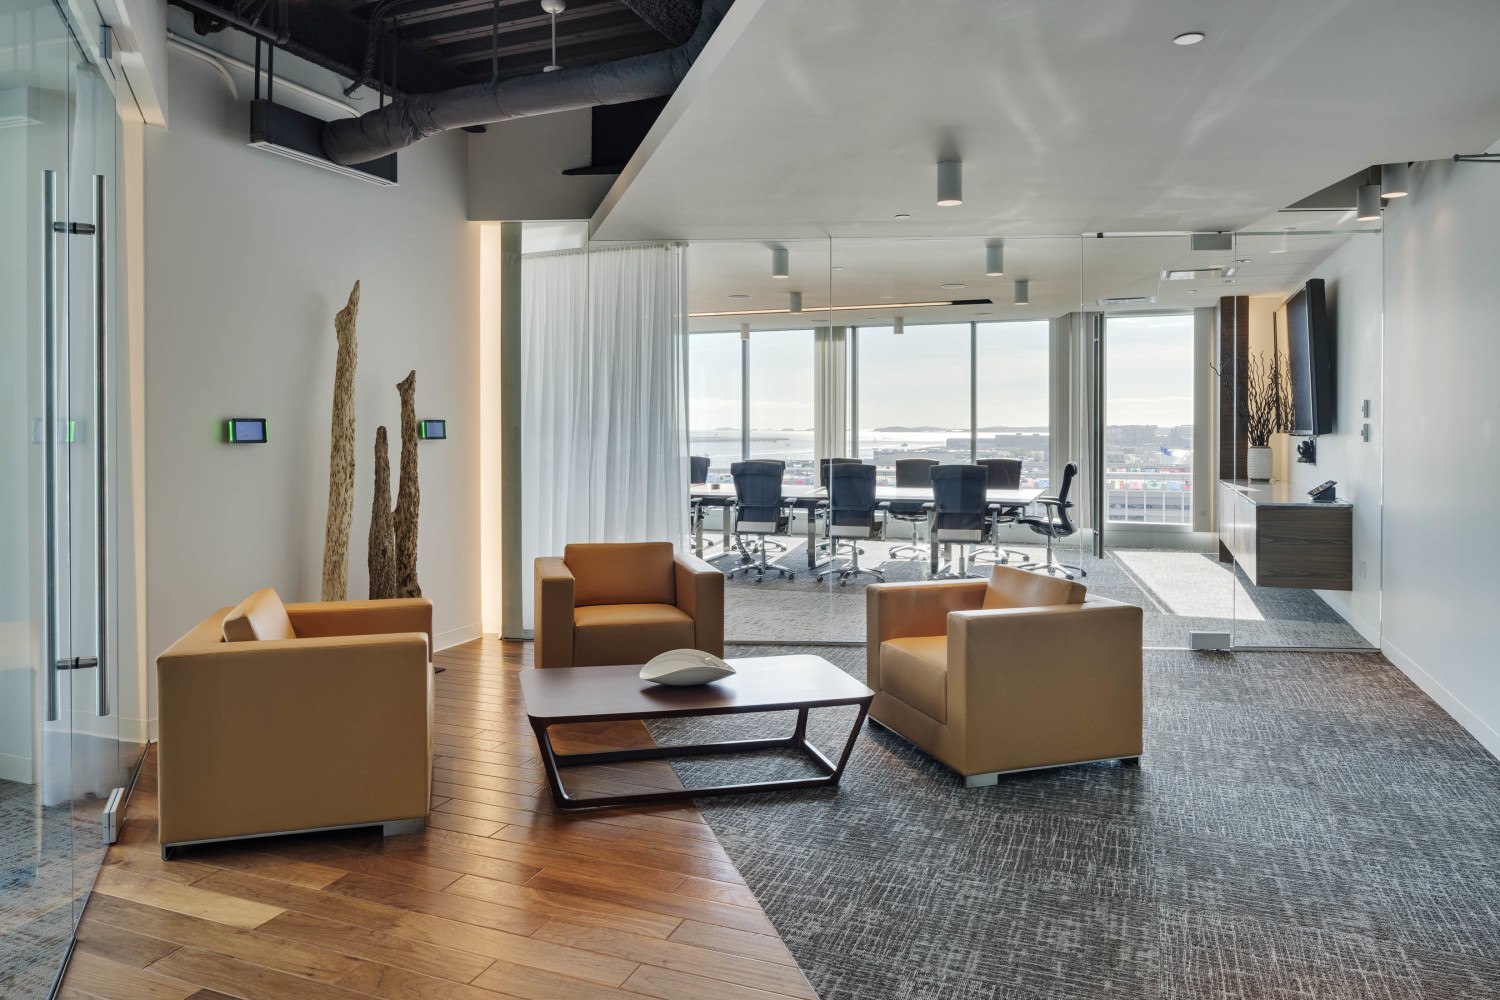 A Tour of Polaris Partners’ Elegant Boston Office